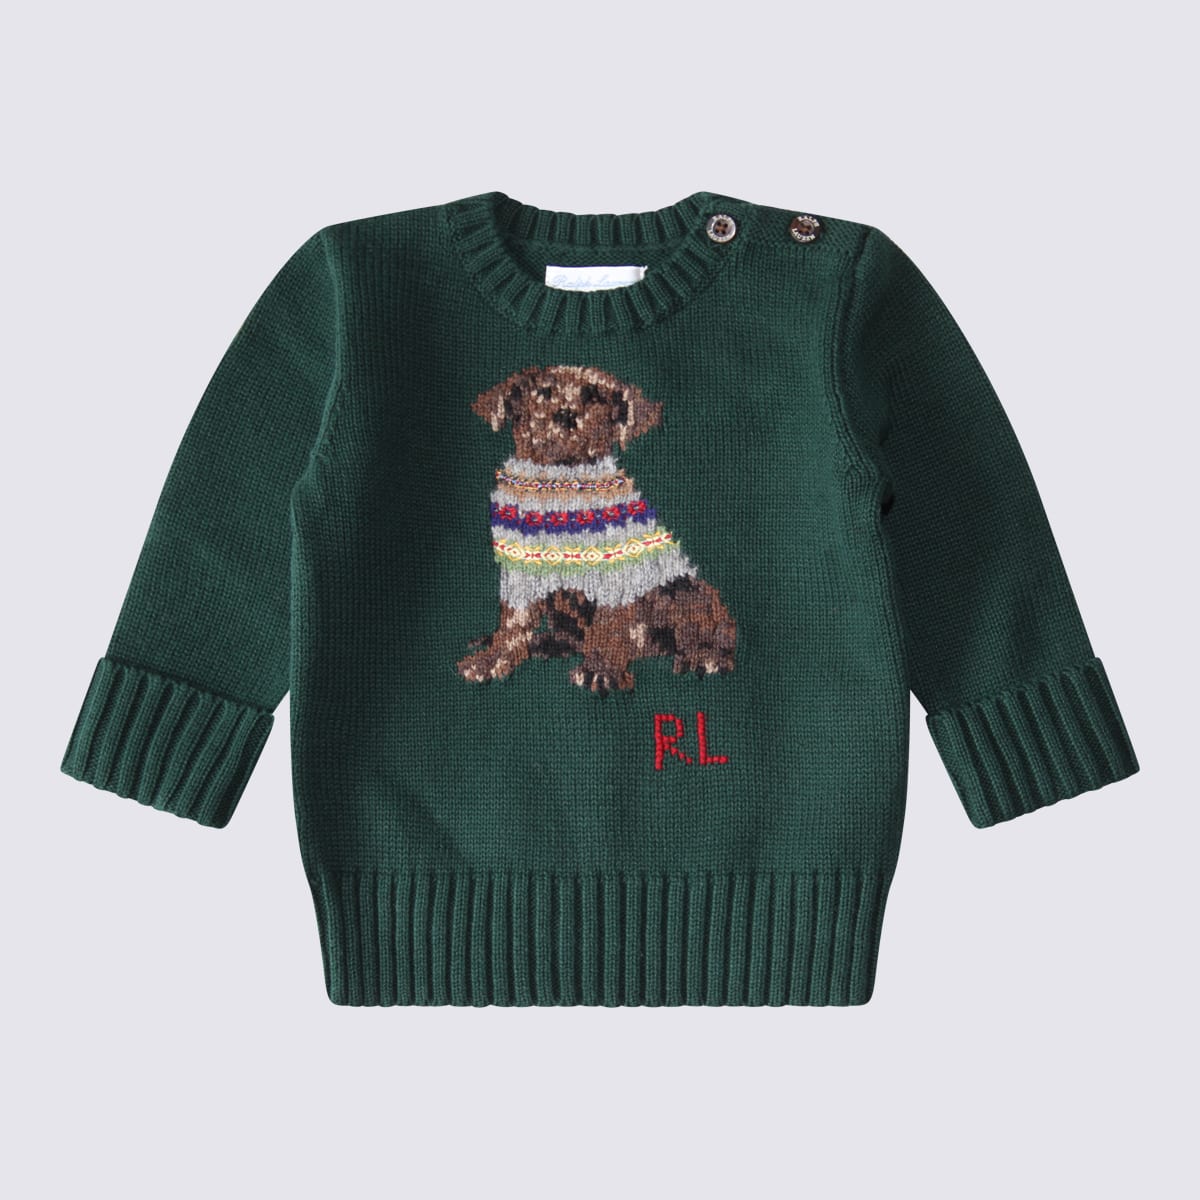 Polo Ralph Lauren Babies' Green Cotton Sweater